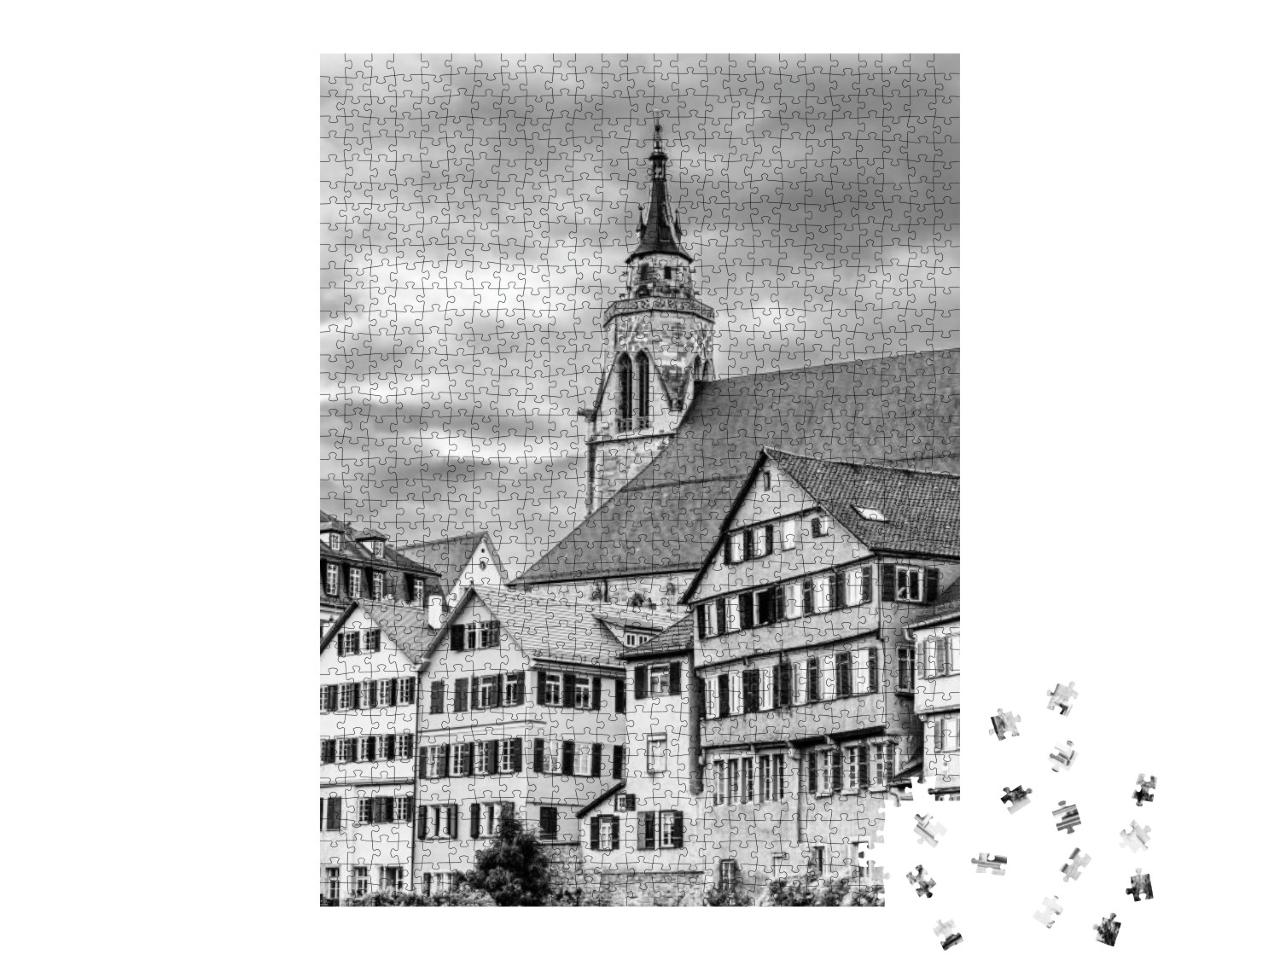 Puzzle 1000 Teile „Stiftskirche St. Georg in der Altstadt von Tübingen, schwarz-weiß“